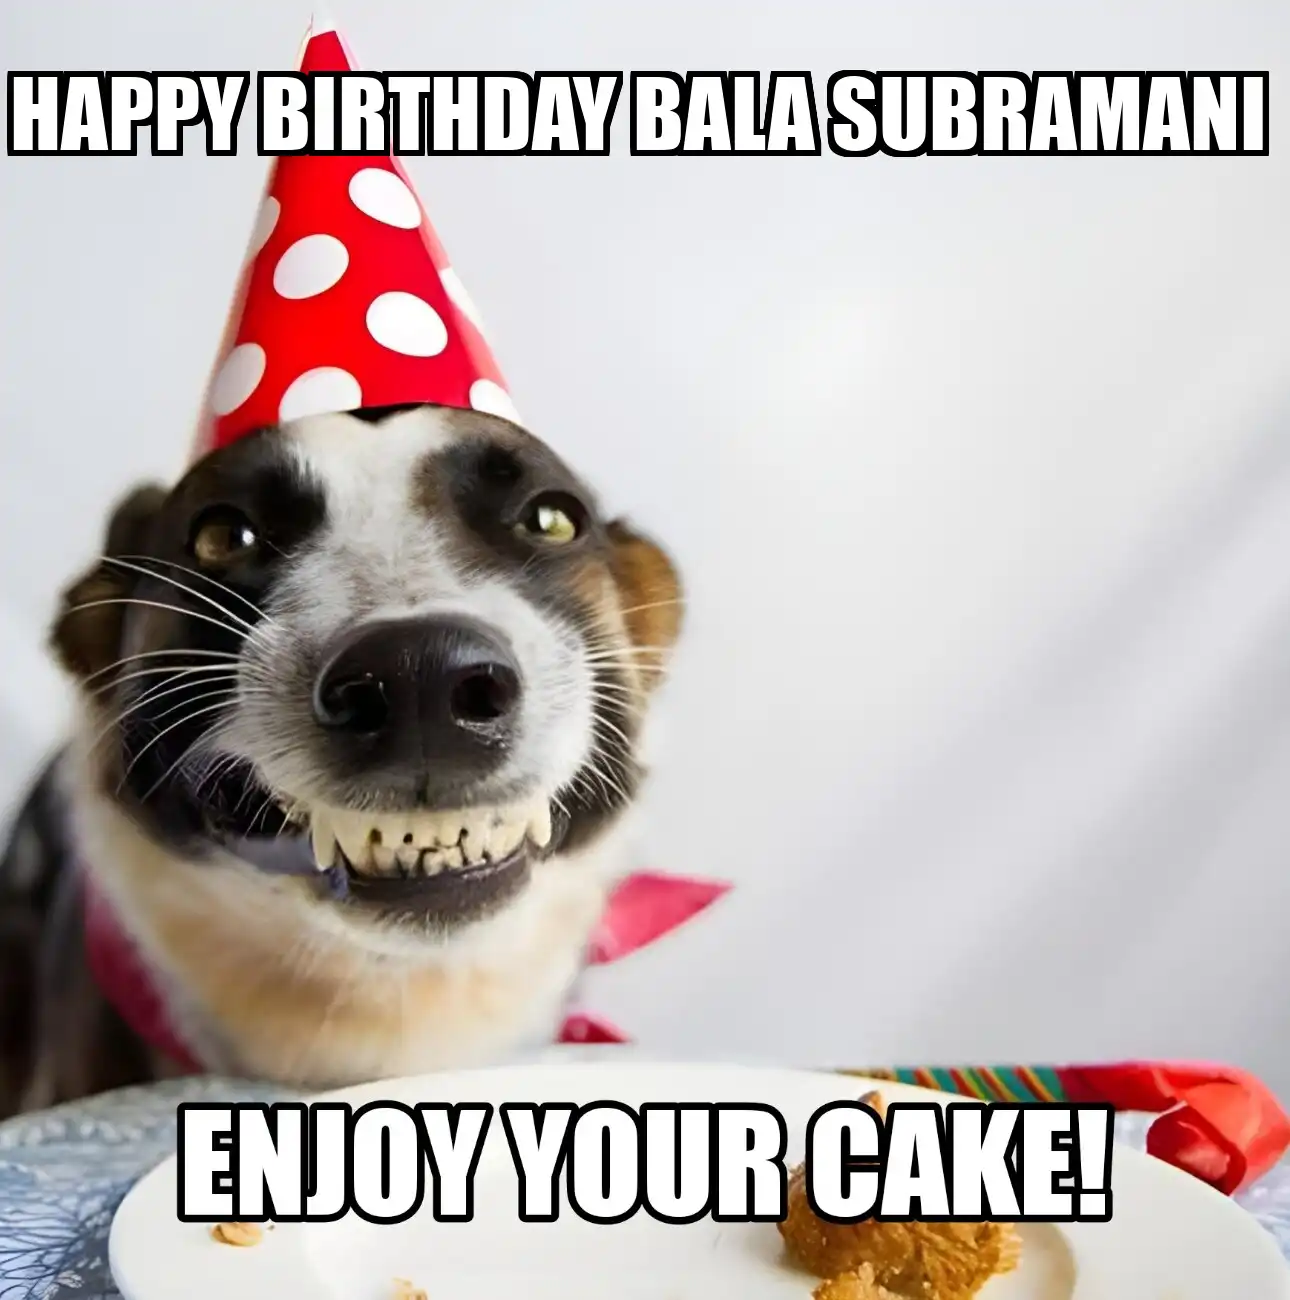 Happy Birthday Bala Subramani Enjoy Your Cake Dog Meme